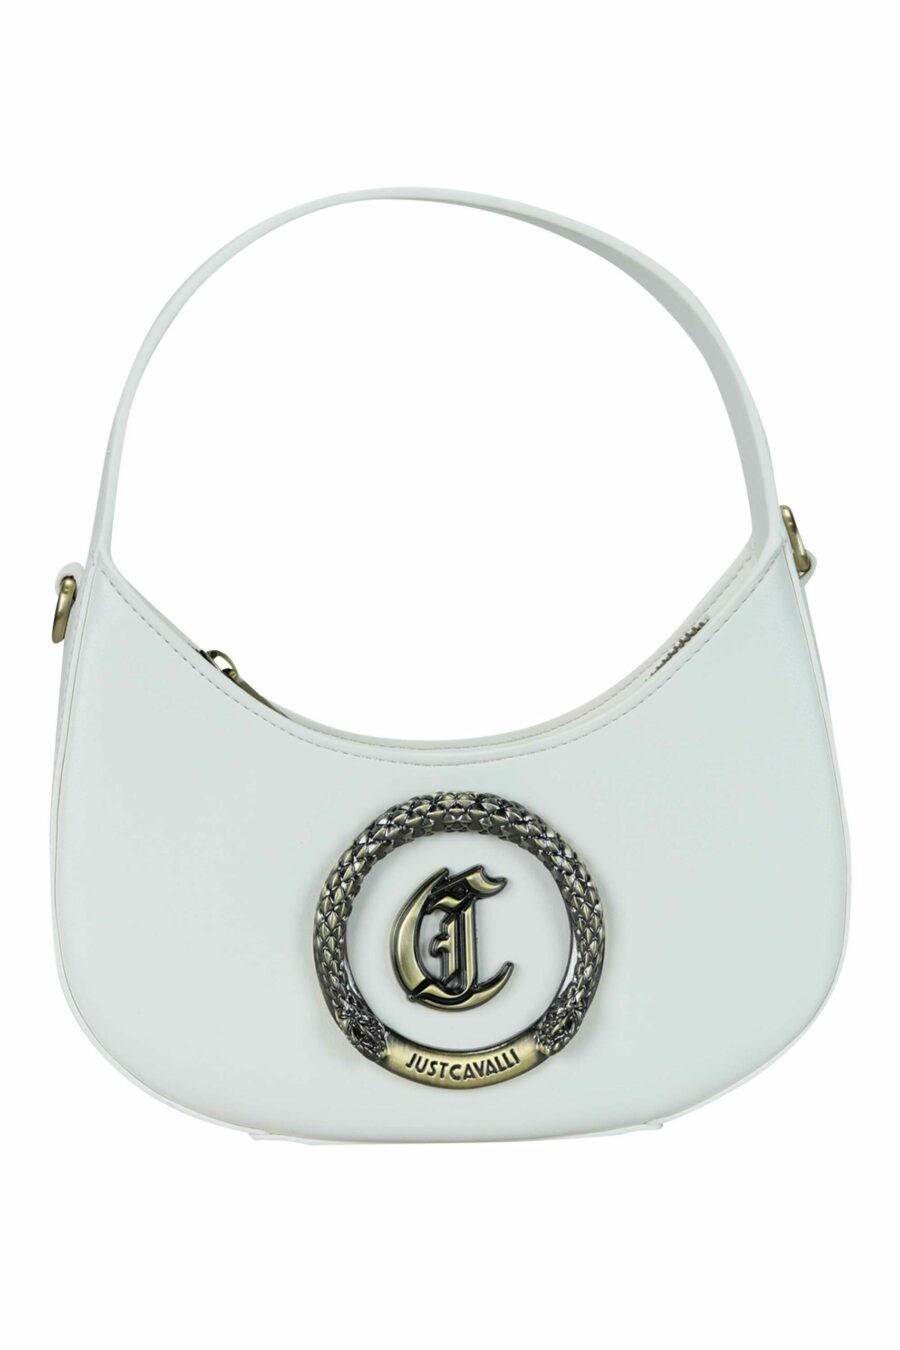 Bolso de hombro blanco con logo circular "c" dorado - 8052672643797 scaled